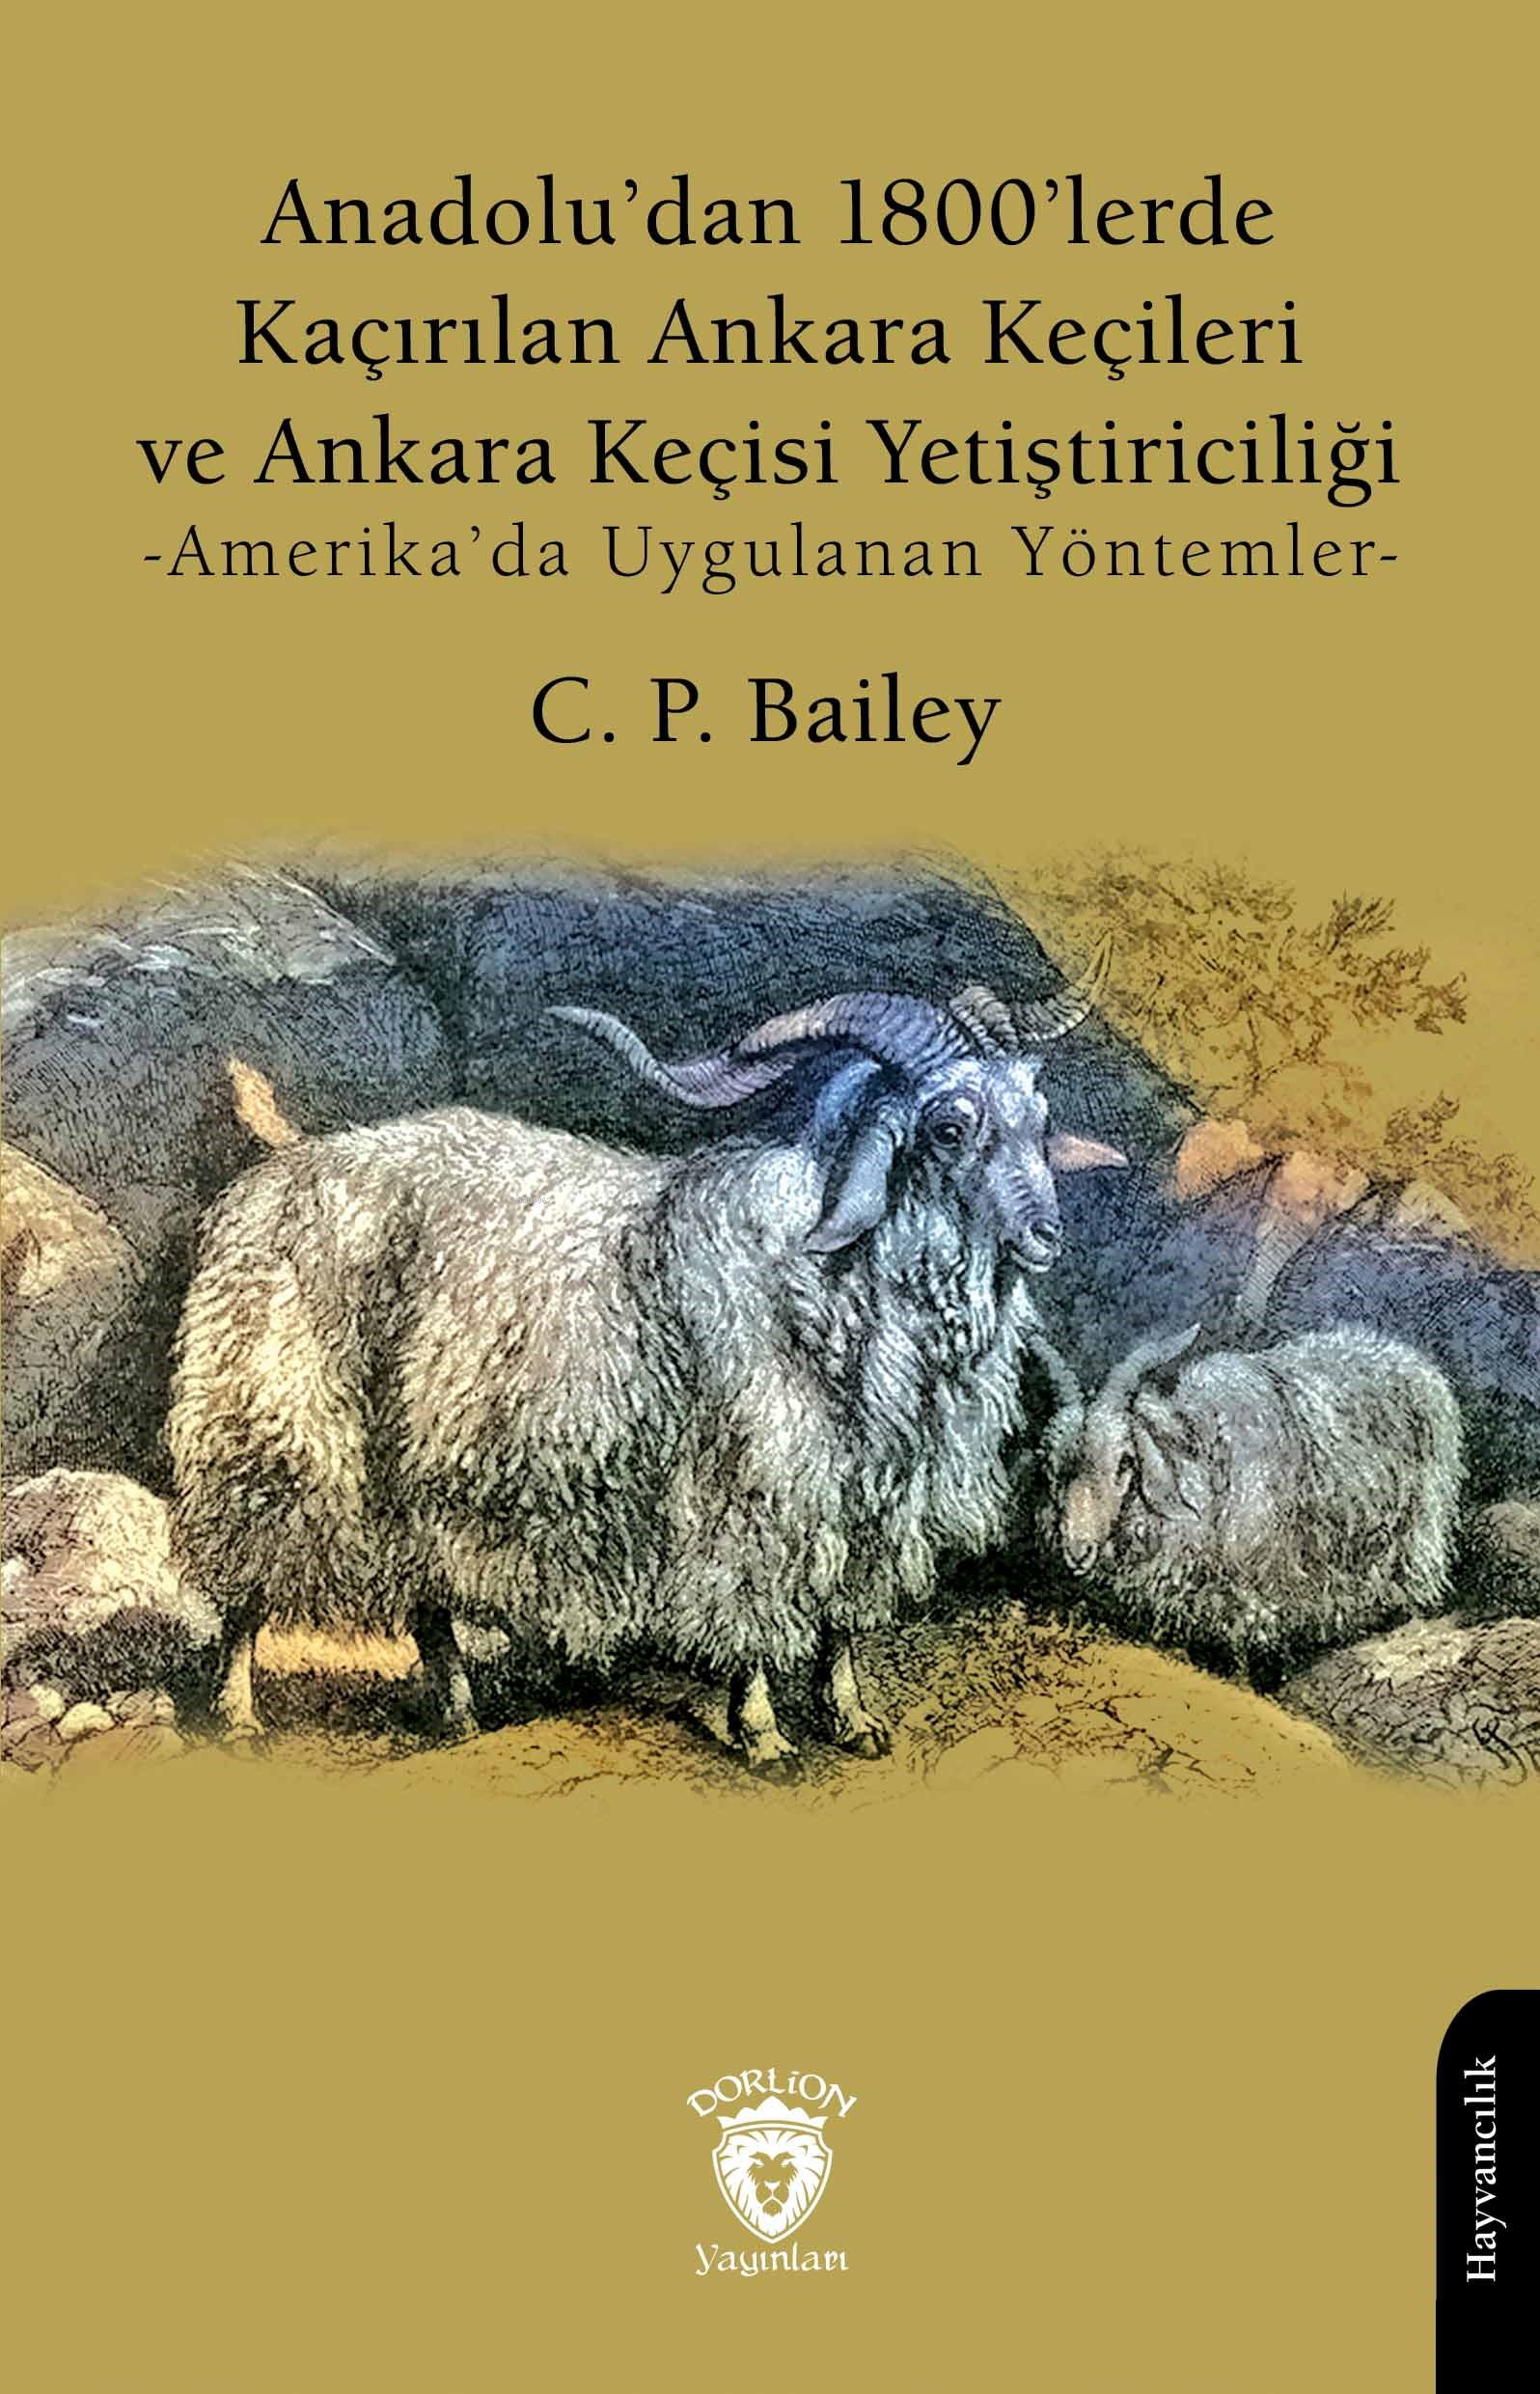 Anadolu’dan 1800’lerde Kaçırılan Ankara Keçileri ve Ankara Keçisi Yetiştiriciliği;Amerika’da Uygulanan Yöntemler